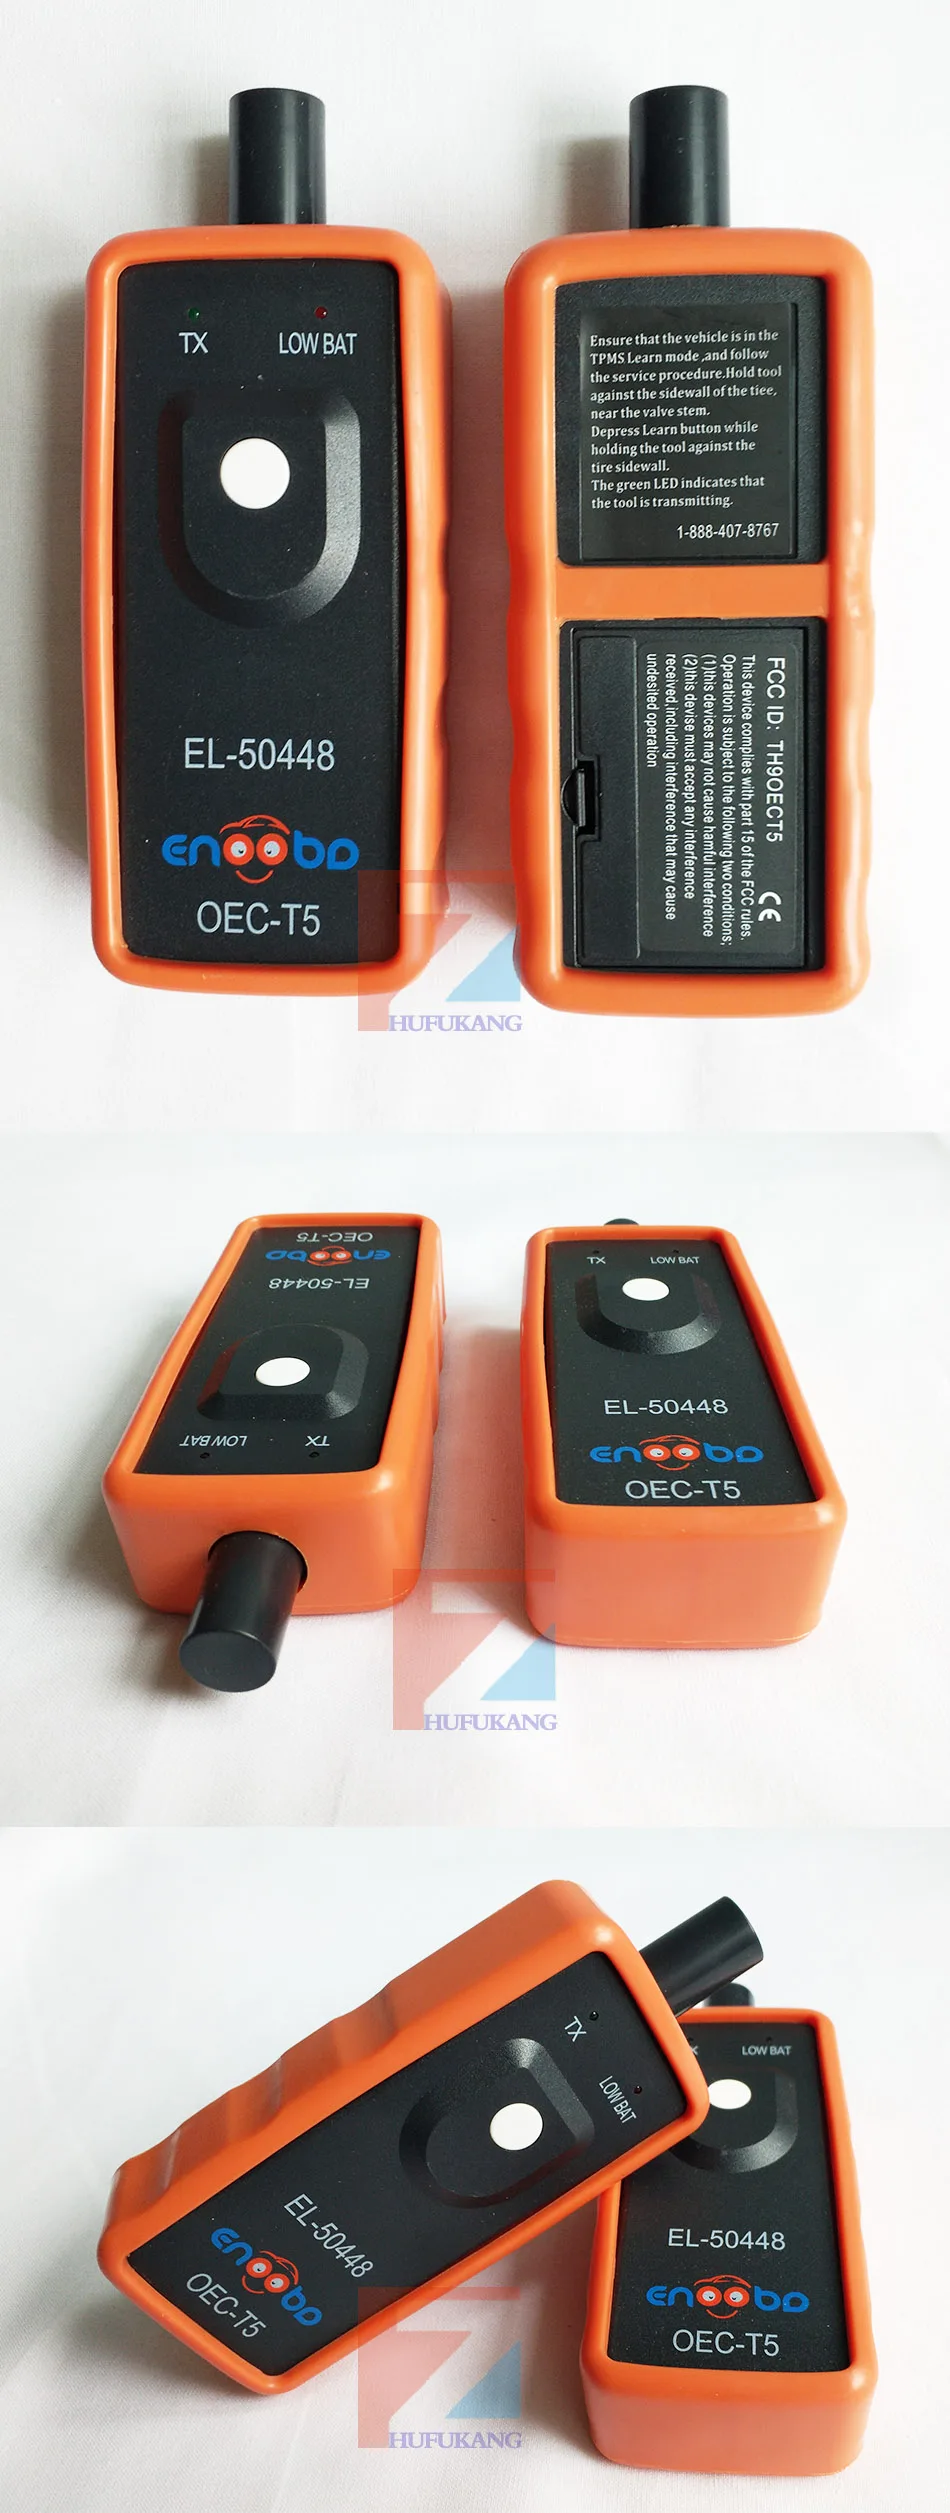 EL50448 для G-M Автомобильный датчик контроля давления в шинах датчик TPMS инструмент активации OEC-T5 для G-M автомобиля EL 50448 TPMS сброс